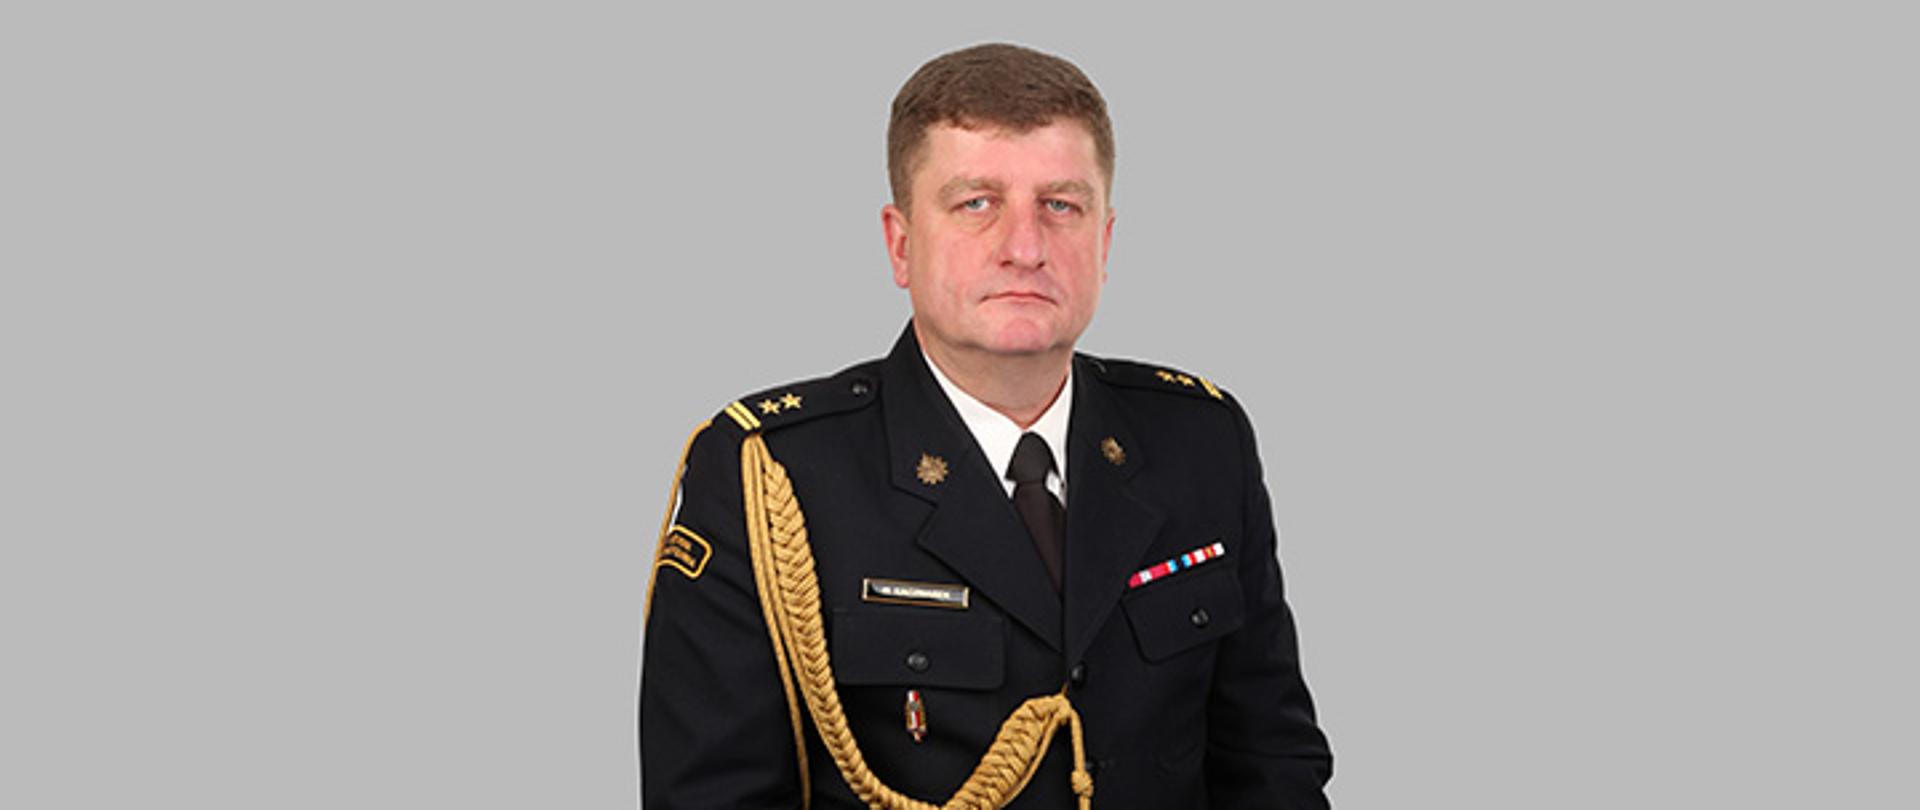 Zdjęcie bryg. mgr inż. Macieja Kaczmarka w mundurze galowym